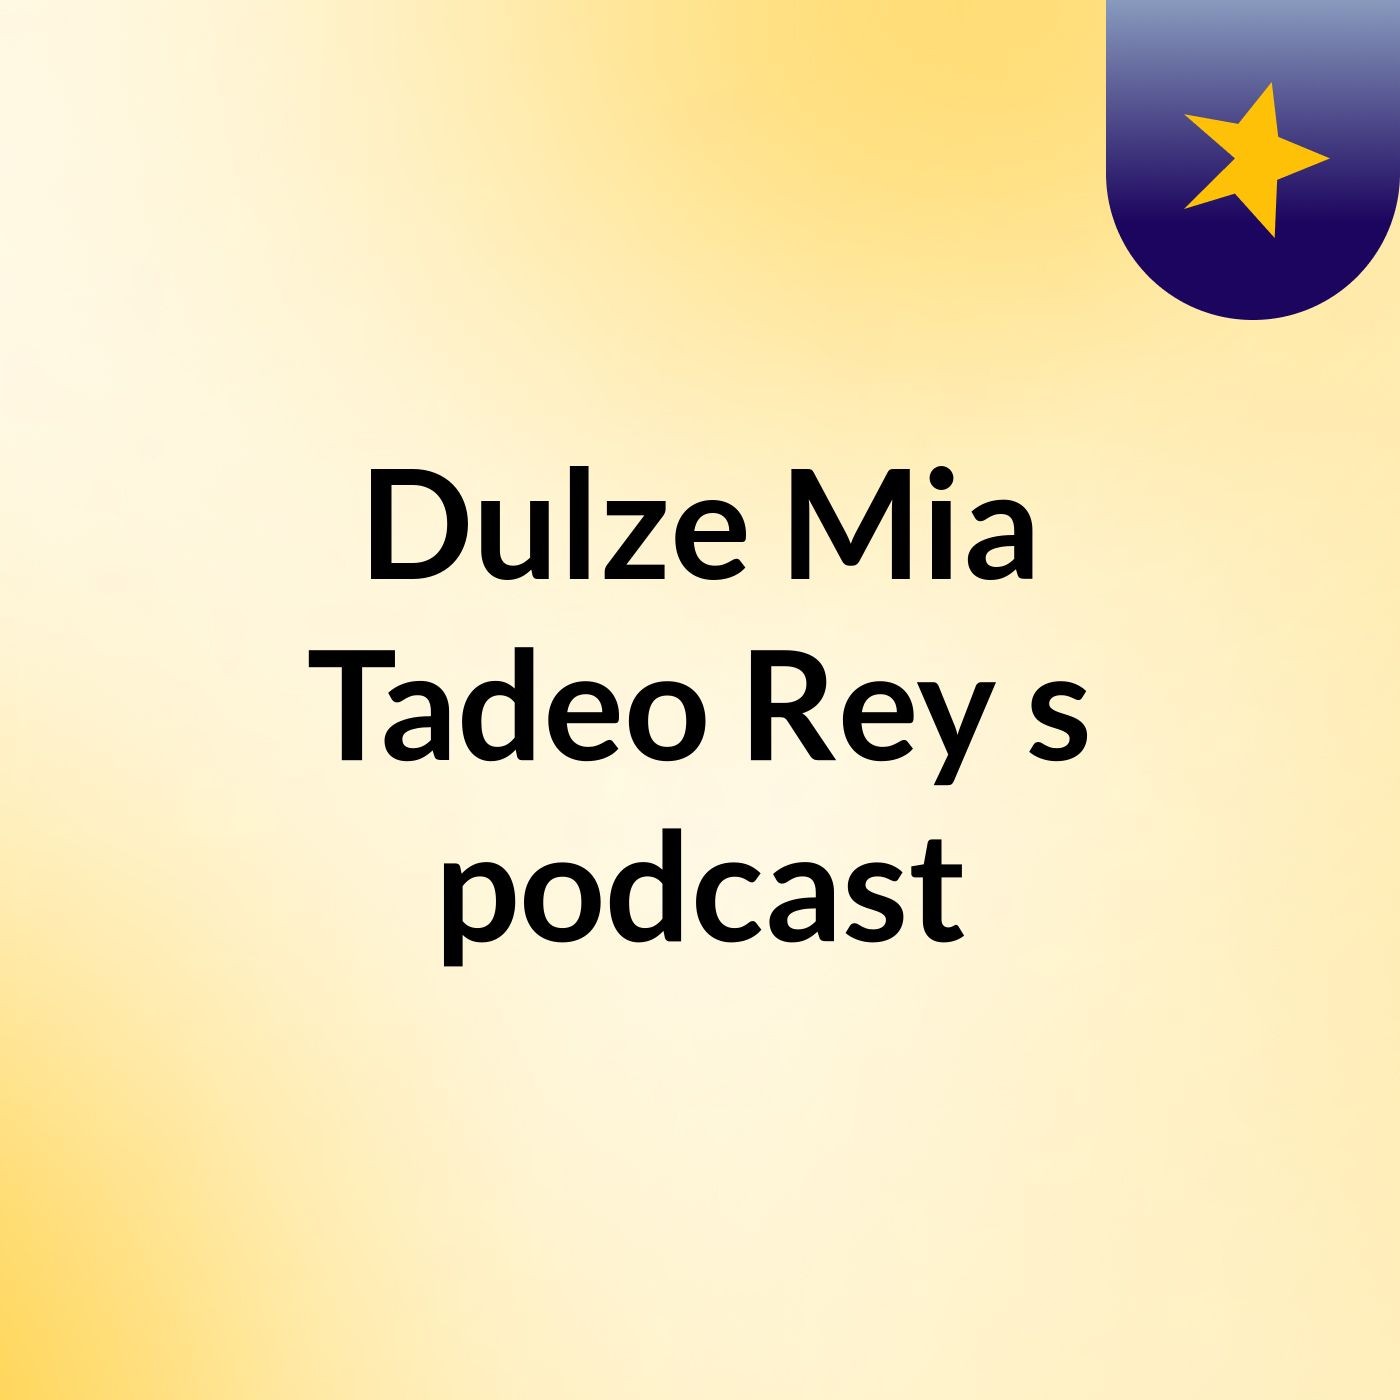 Dulze Mia Tadeo Rey's podcast